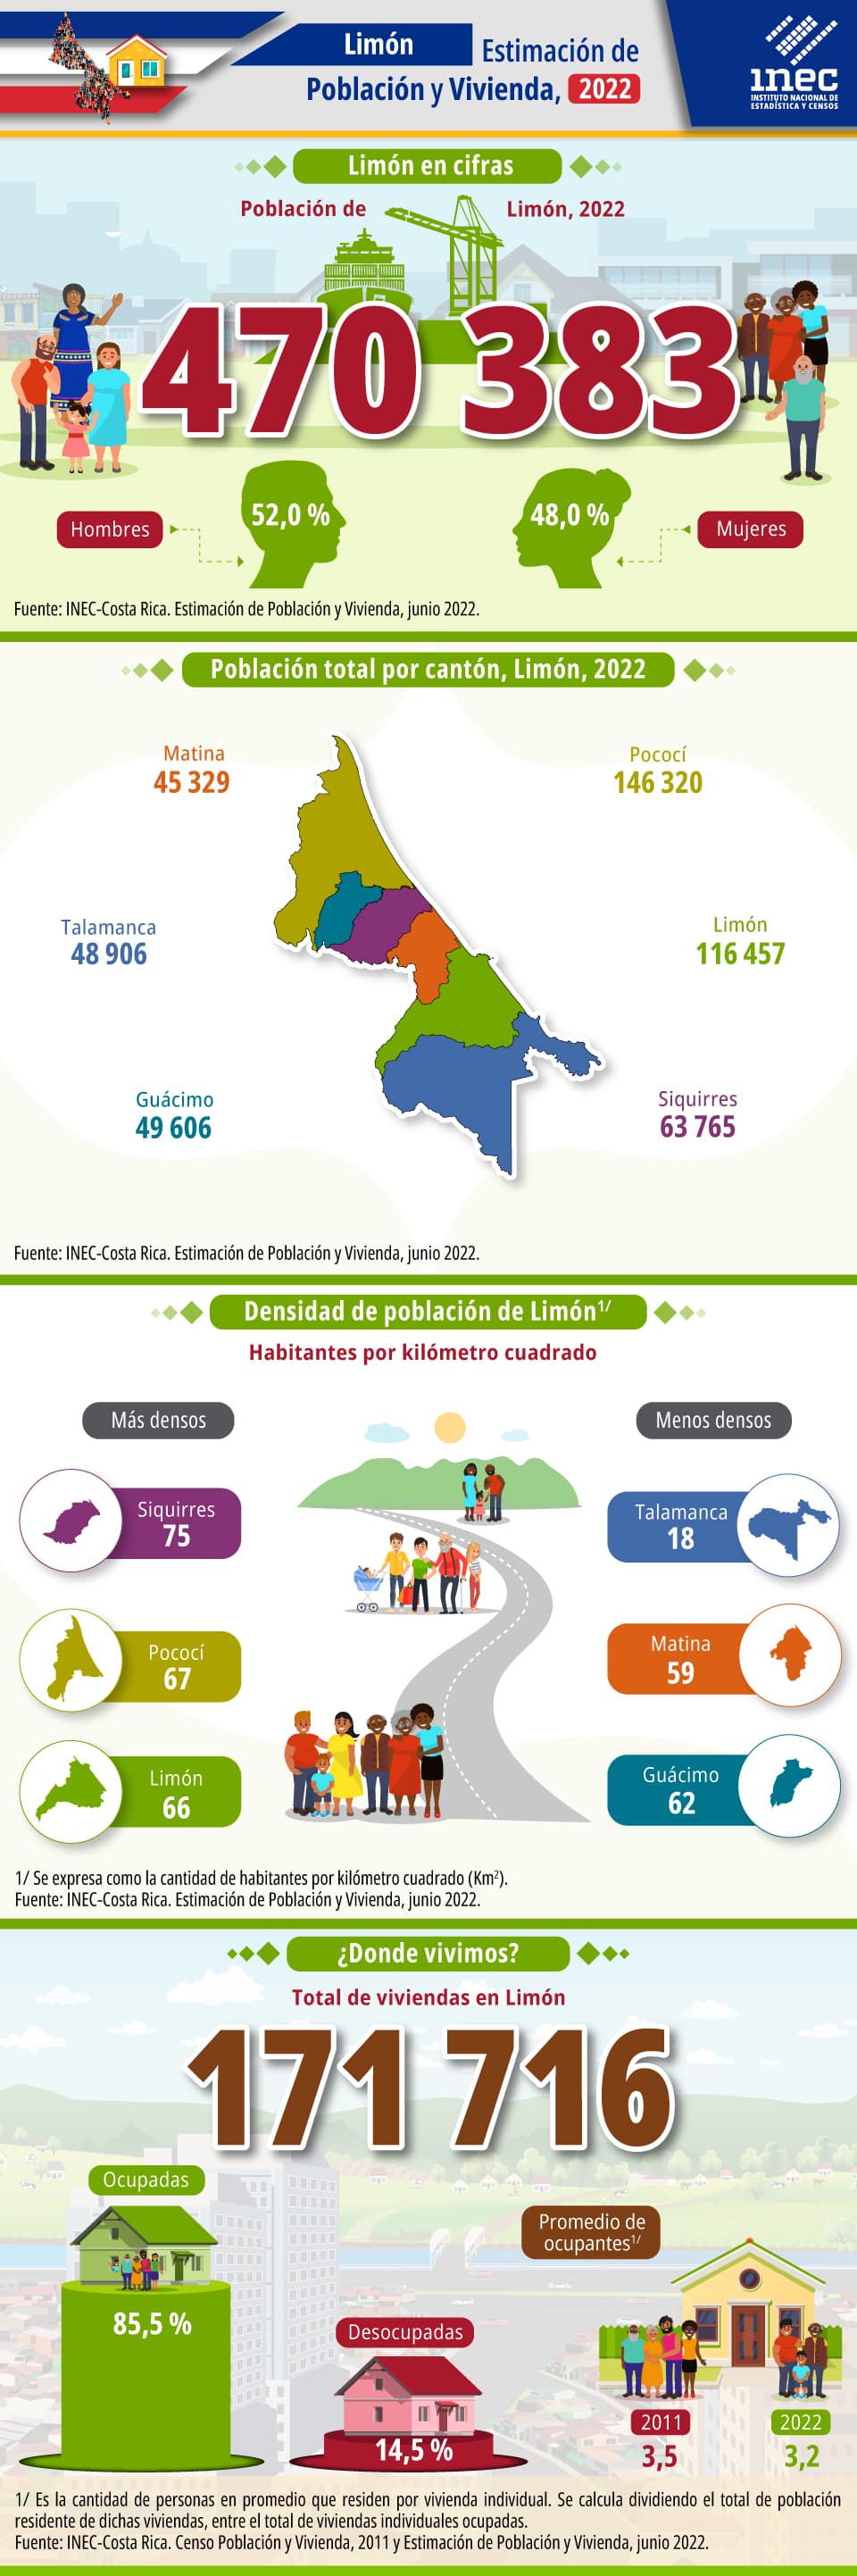 Infografía. Estimación de Población y Vivienda 2022. Provincia de Limón.